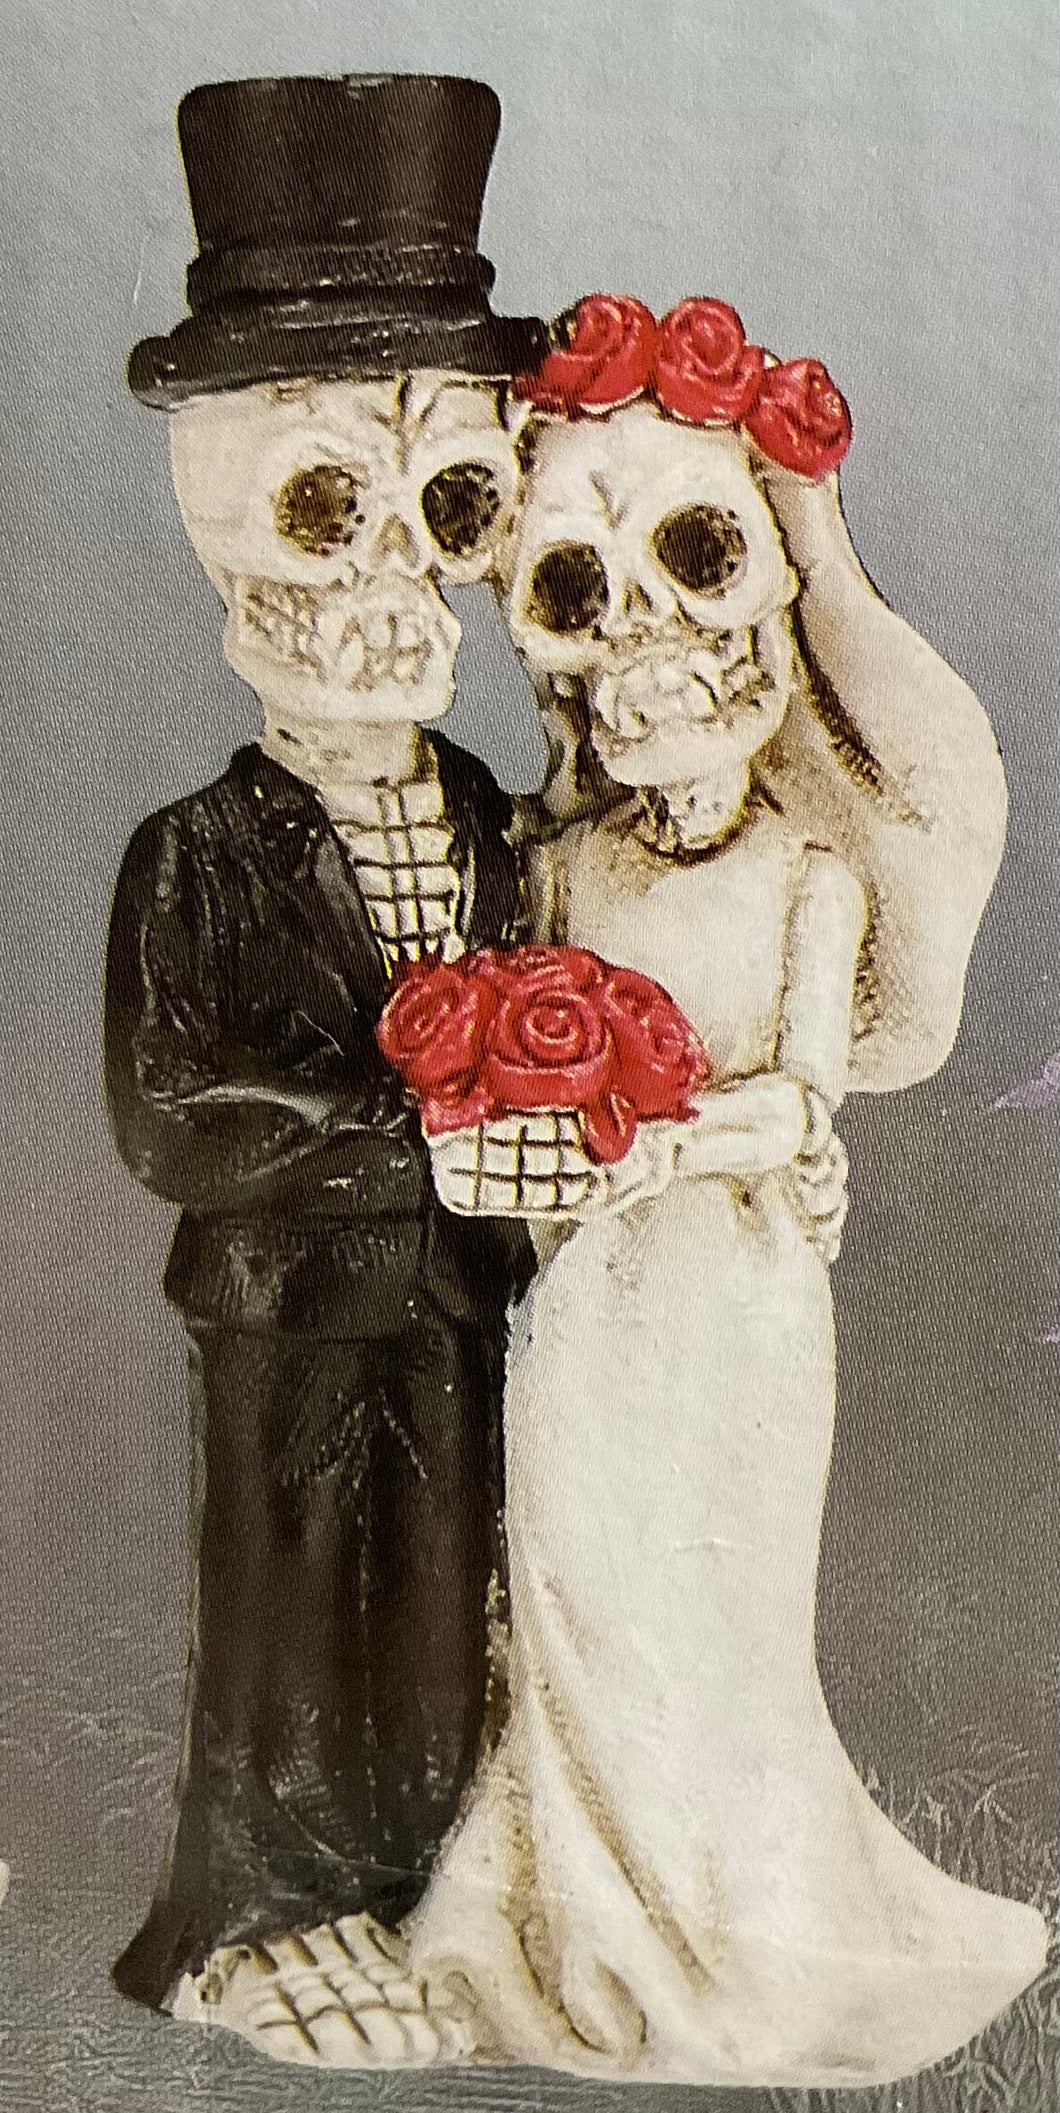 Skeleton wedding figurine